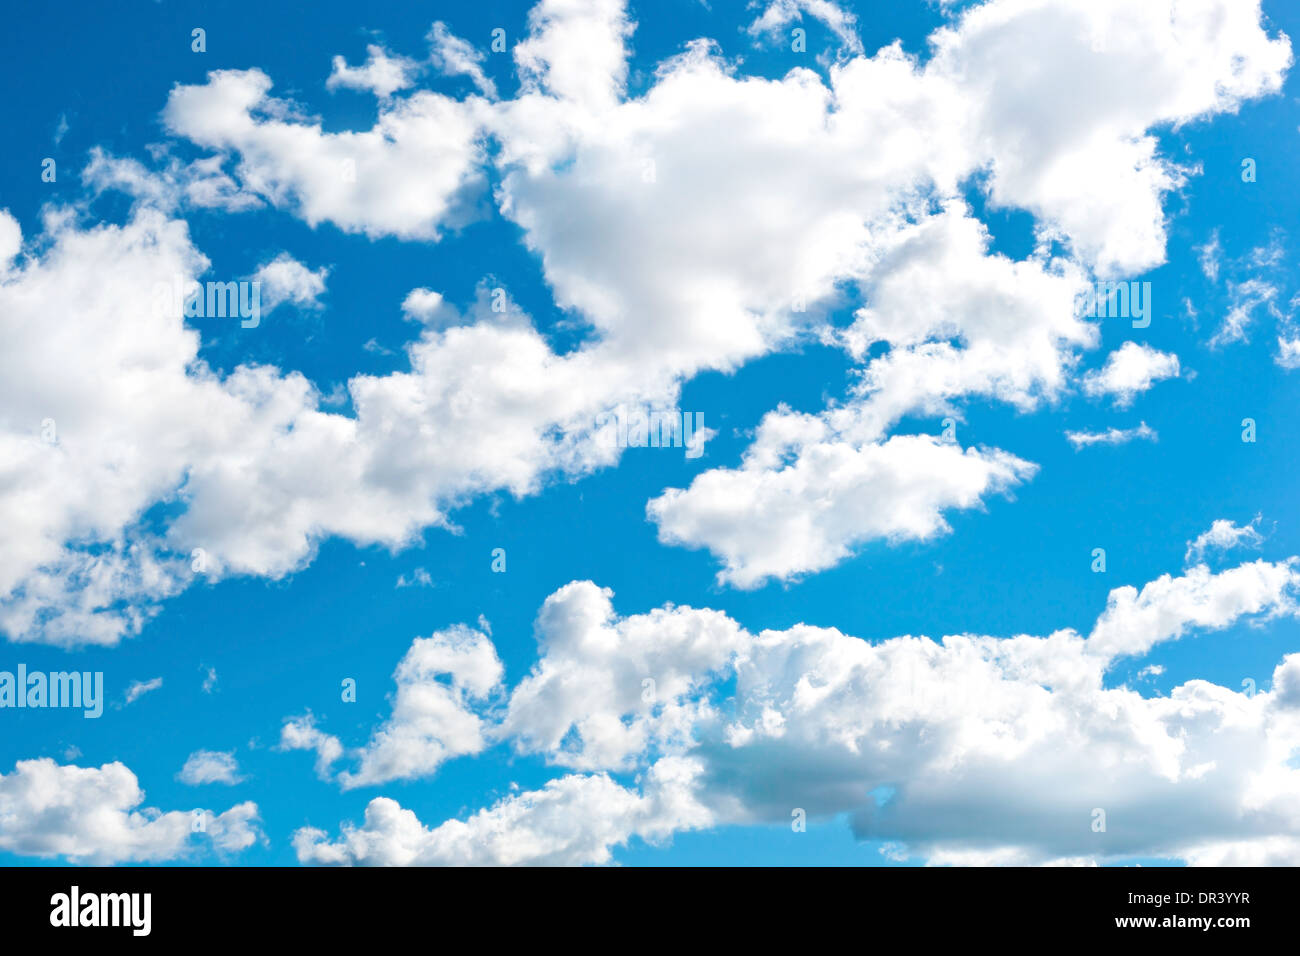 Cloudly fond ciel bleu Banque D'Images